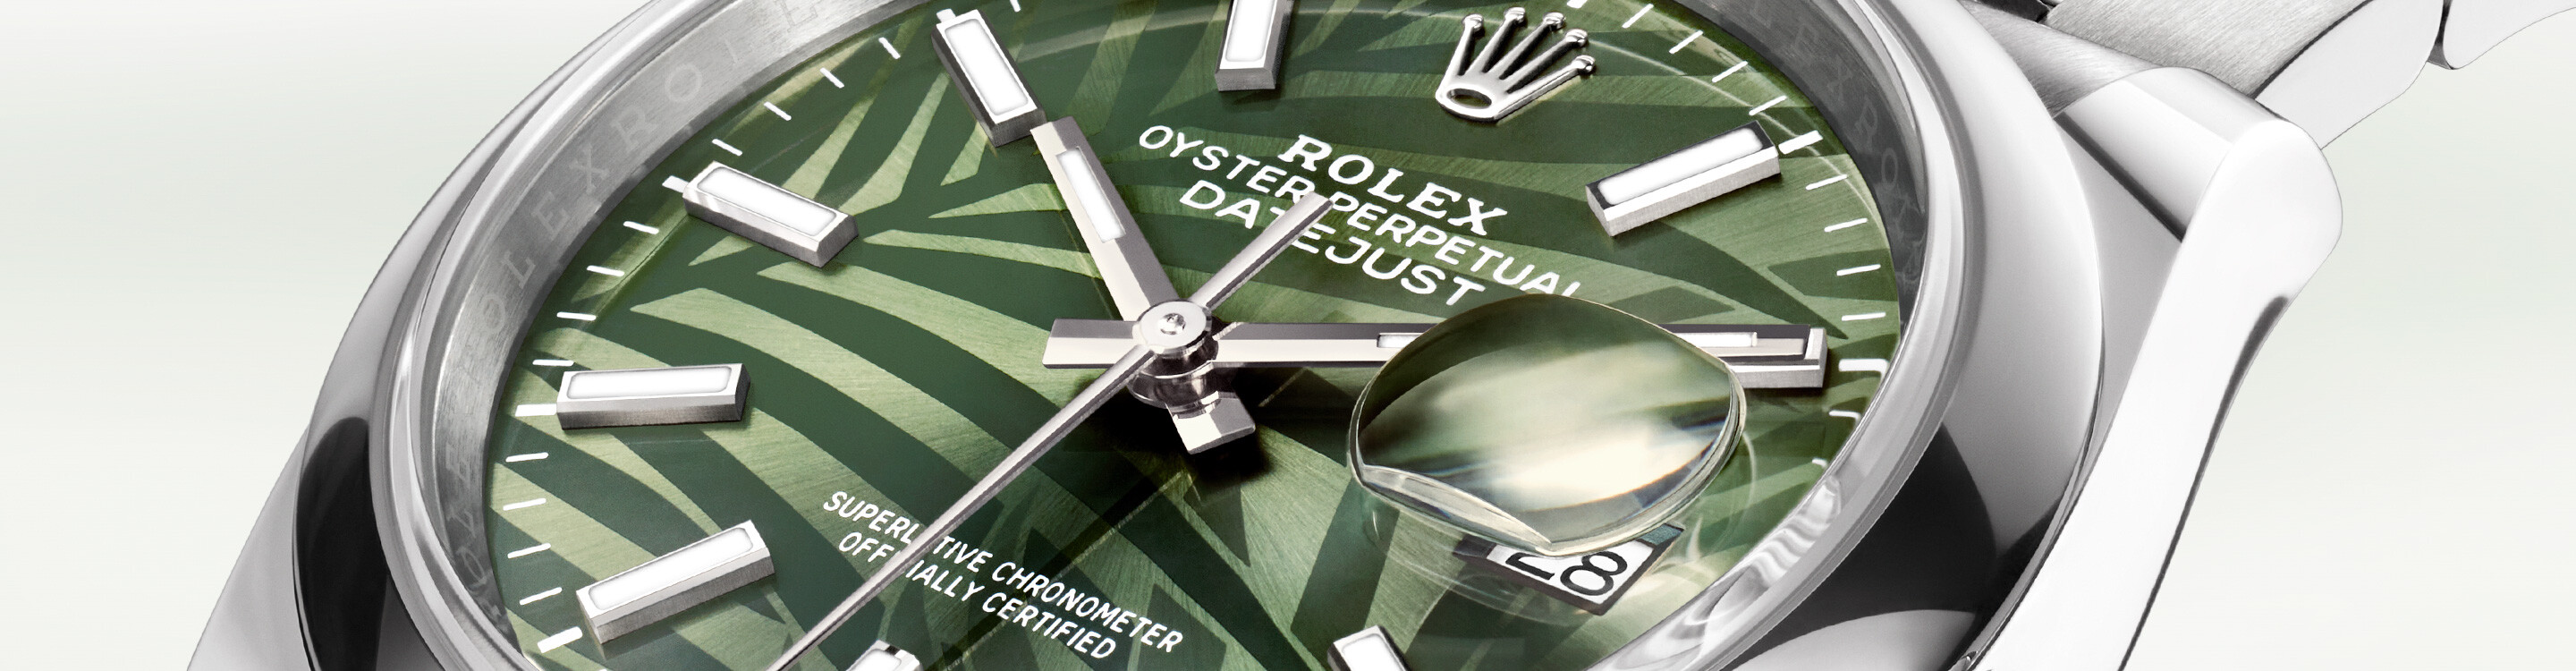 Rolex Watch Datejust 41